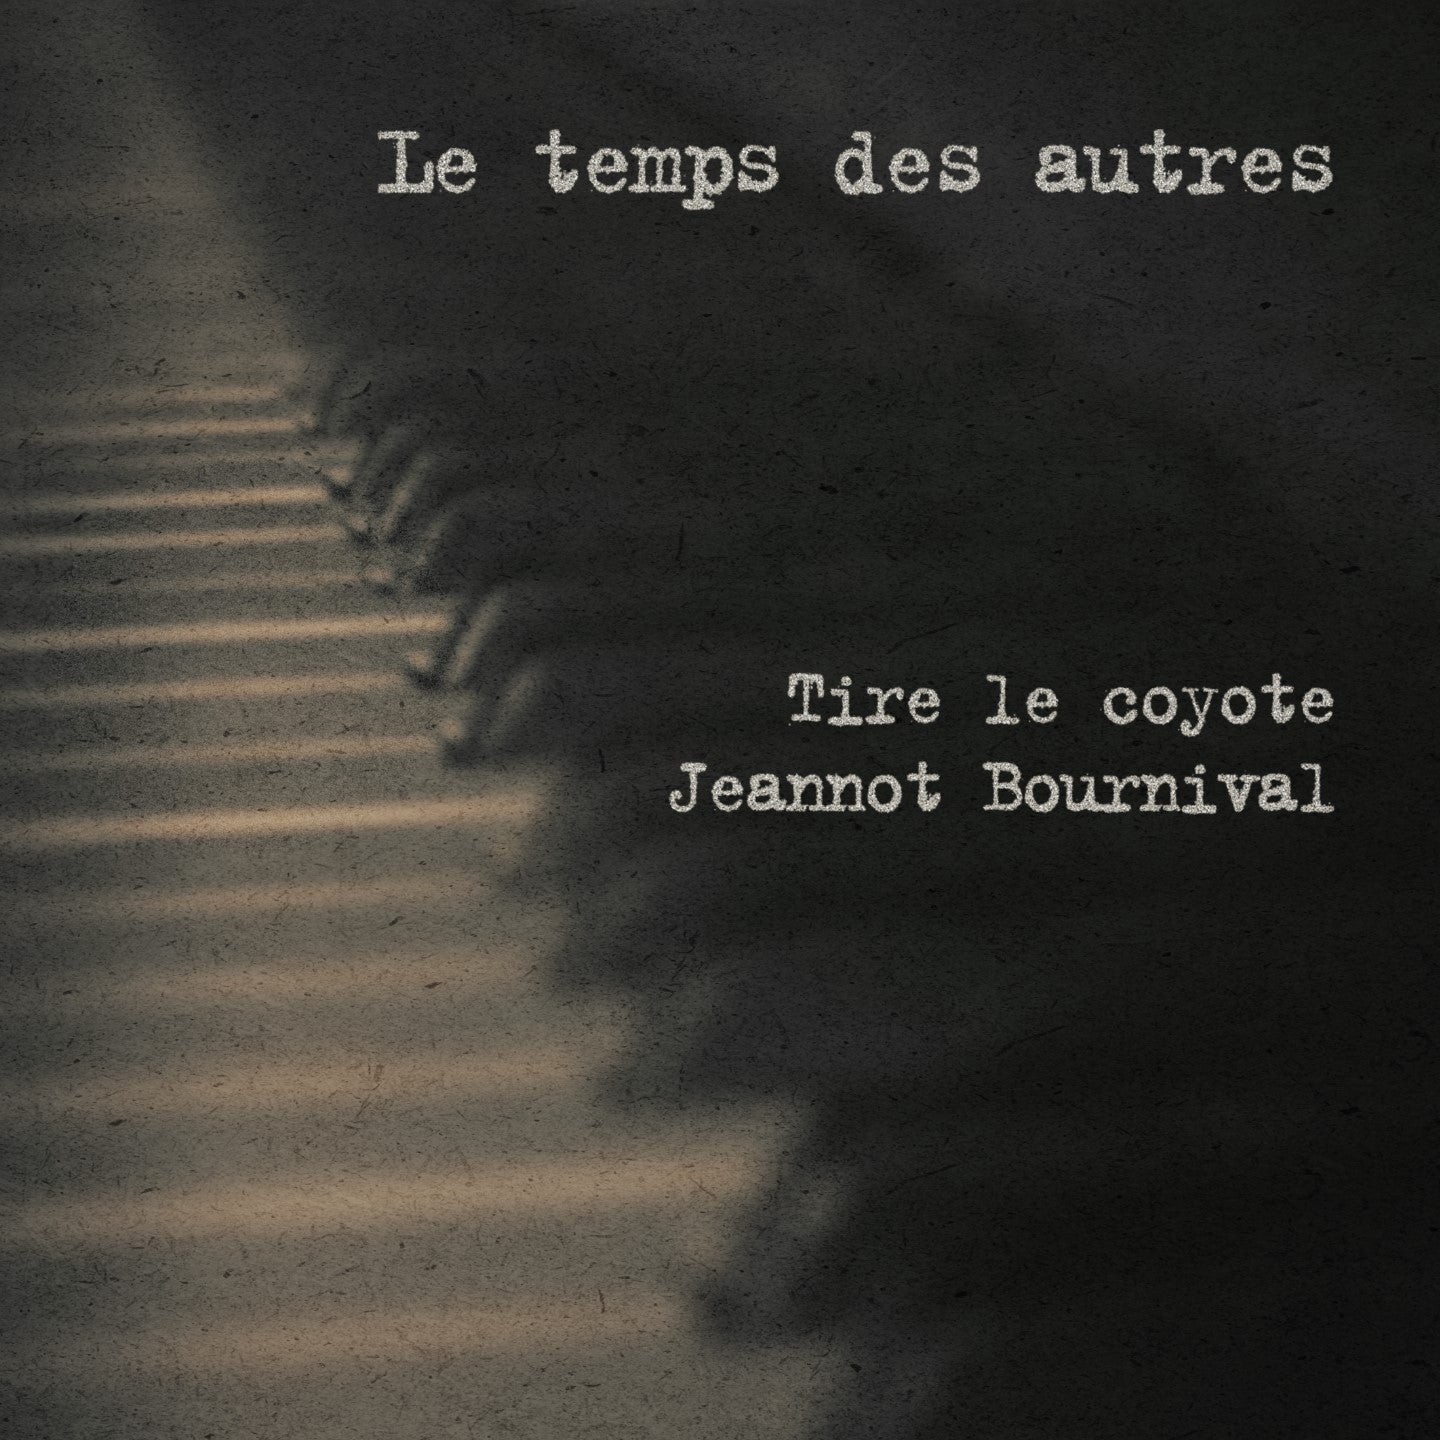 CD - Tire le coyote et Jeannot Bournival - Le temps des autres - TRICD7414